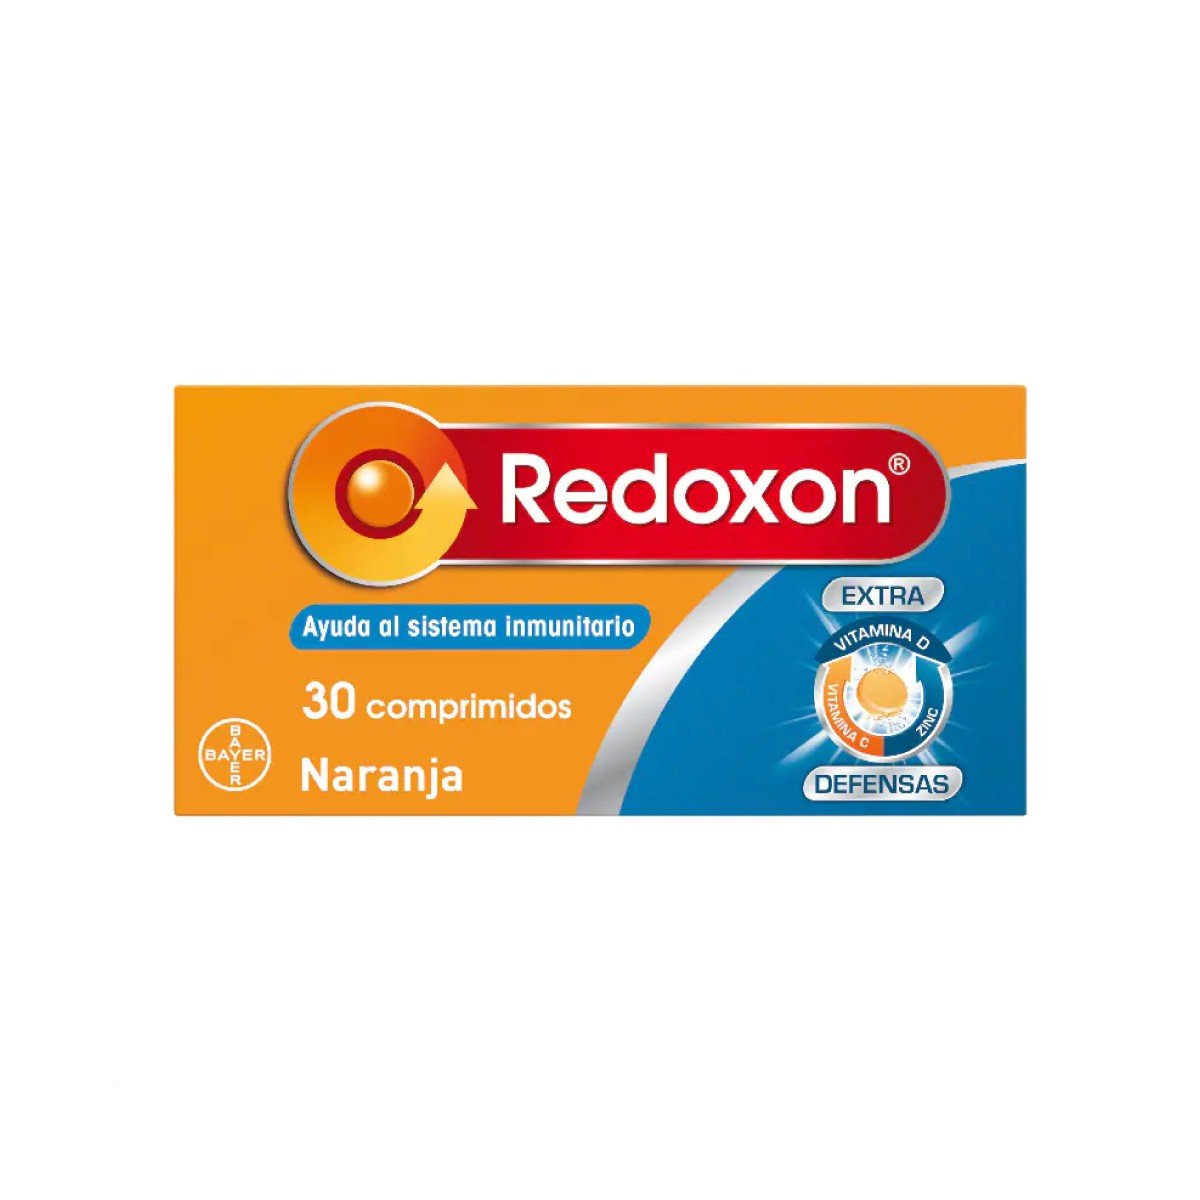 Redoxon Extra Defensas, 30 comprimidos